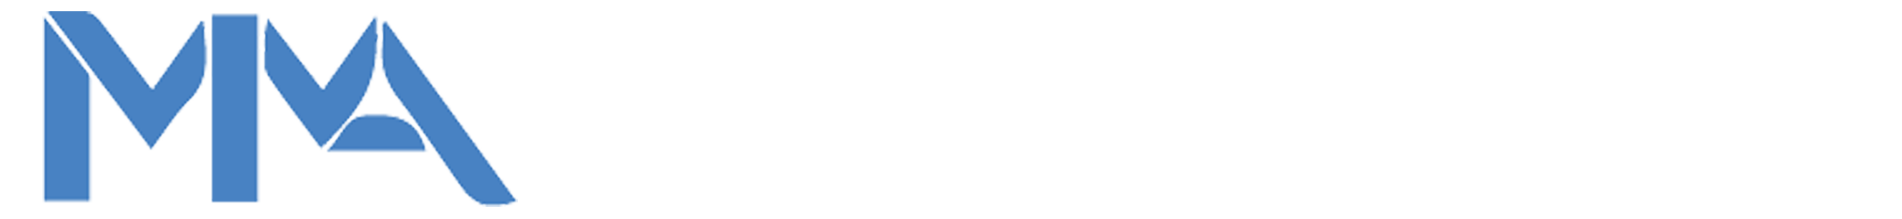 Assignment Help | Online Assignment Help | Make My Assignment